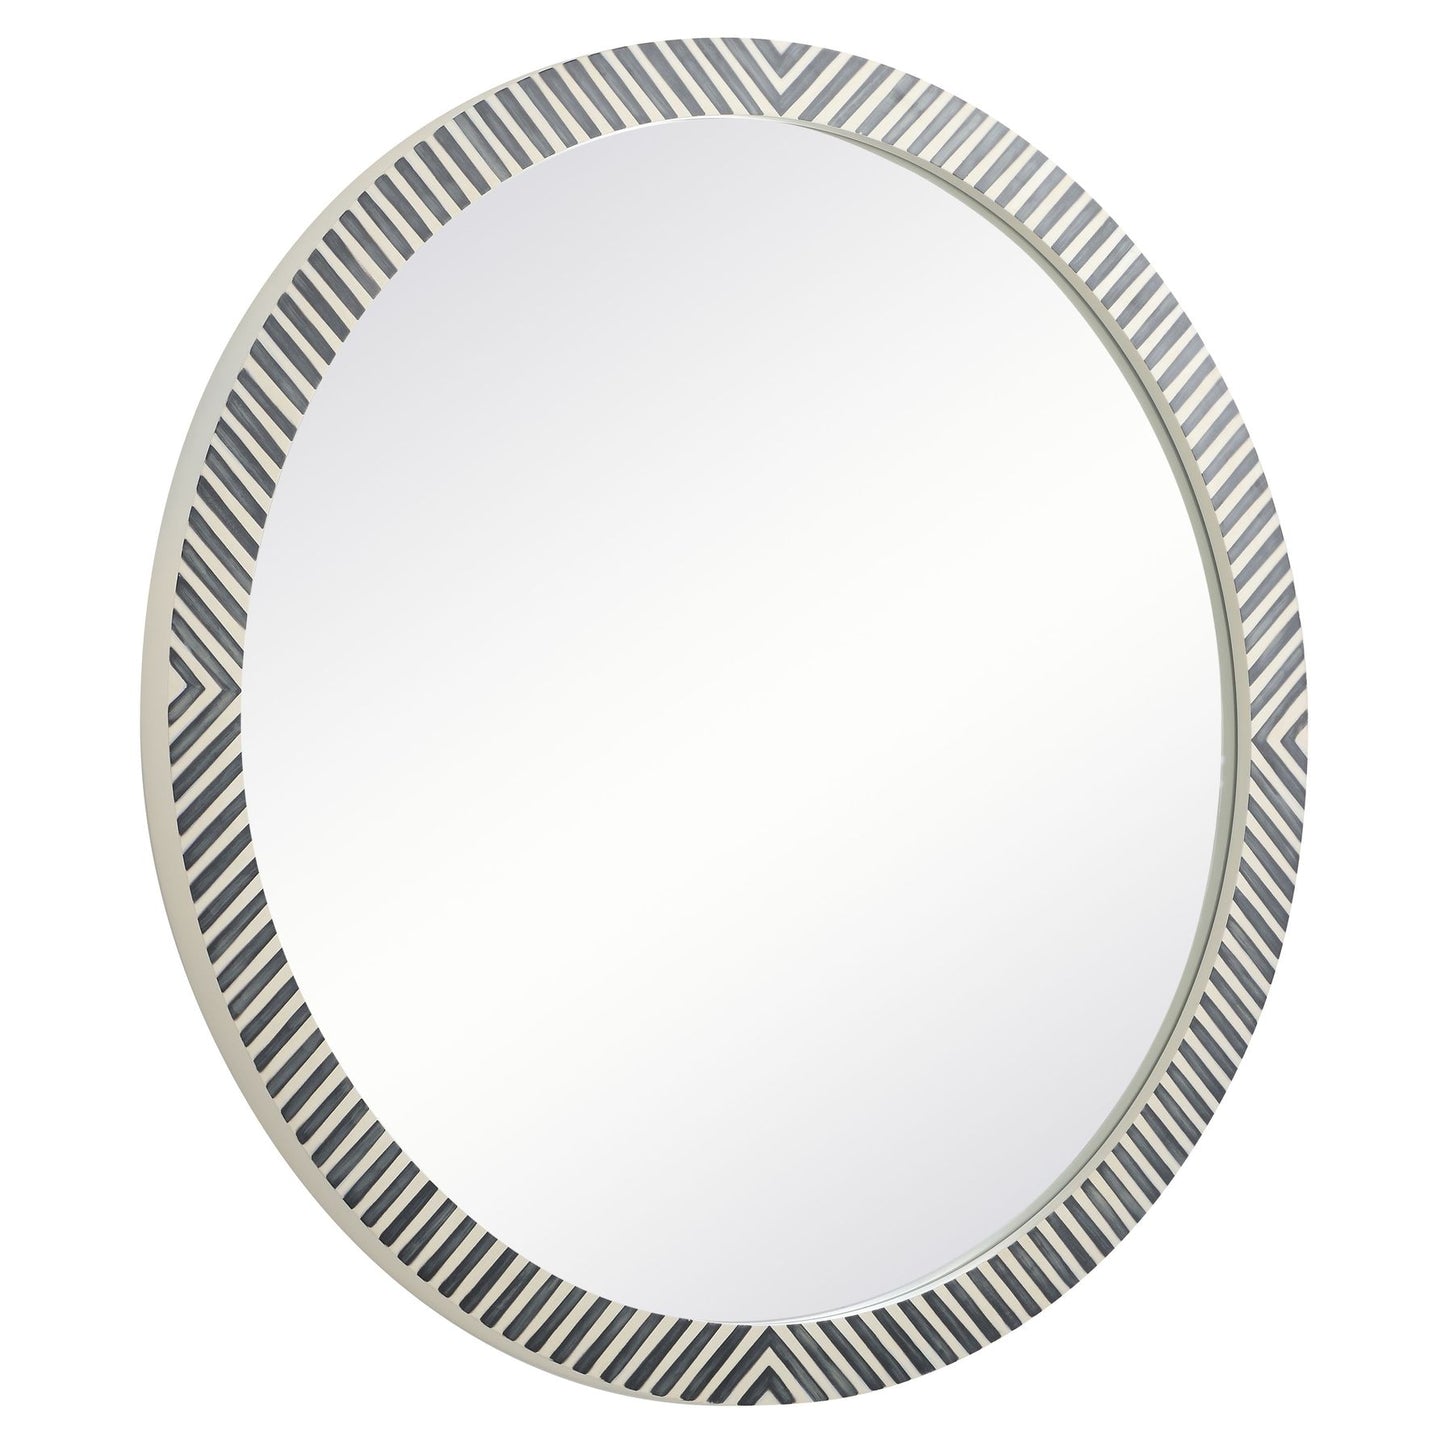 MR54848 Oullette 48" x 48" Round Mirror in Chevron Frame